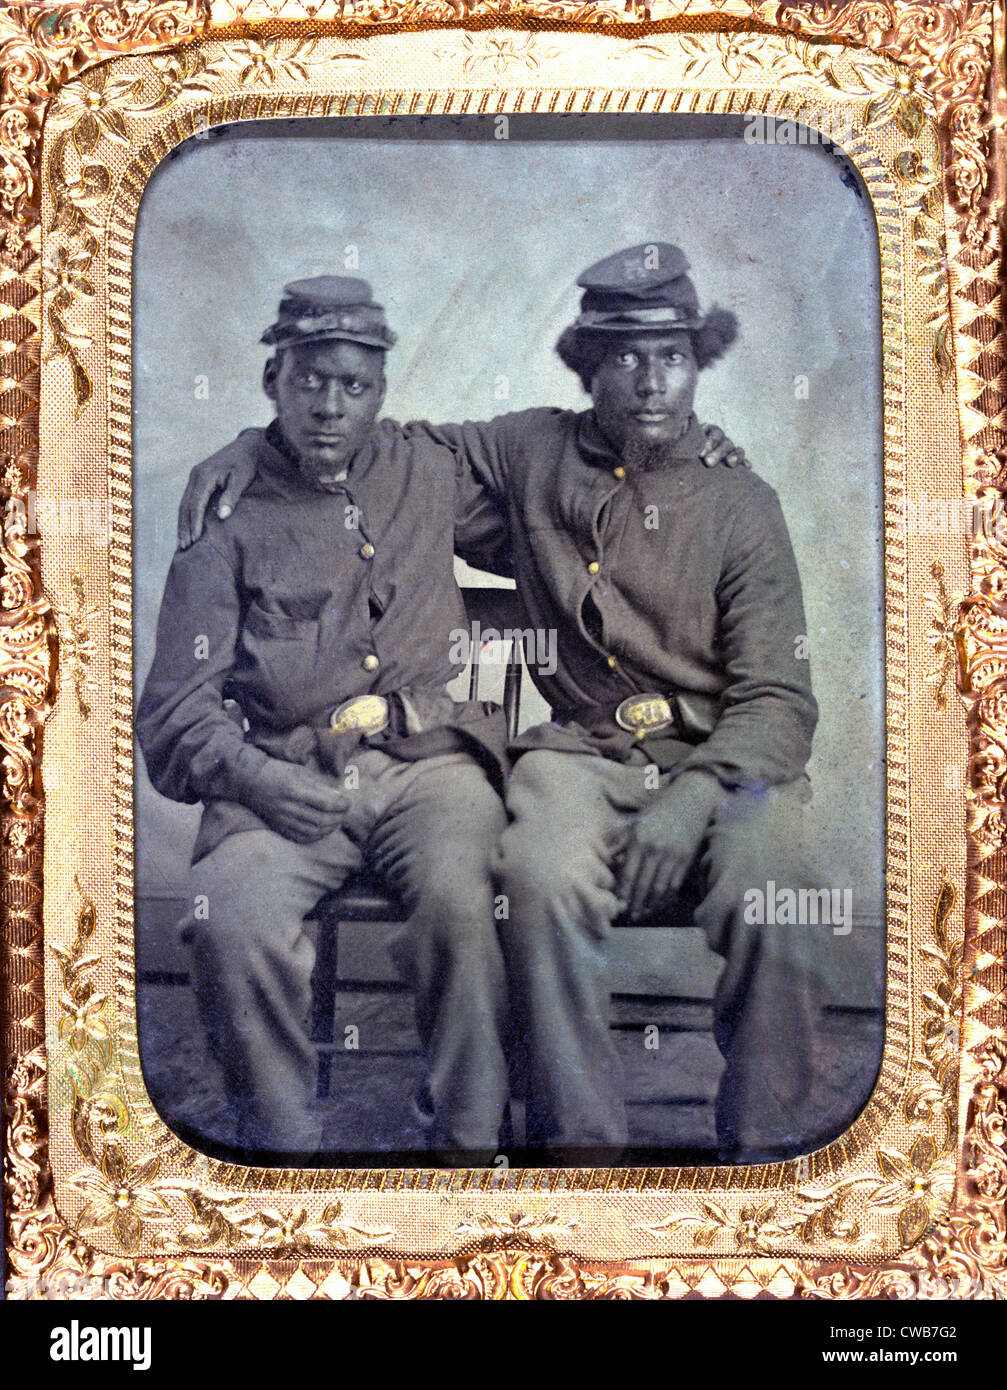 Zwei afroamerikanische Soldaten Union Uniformen tragen. Ferrotypie ca. 1860-1870 Stockfoto